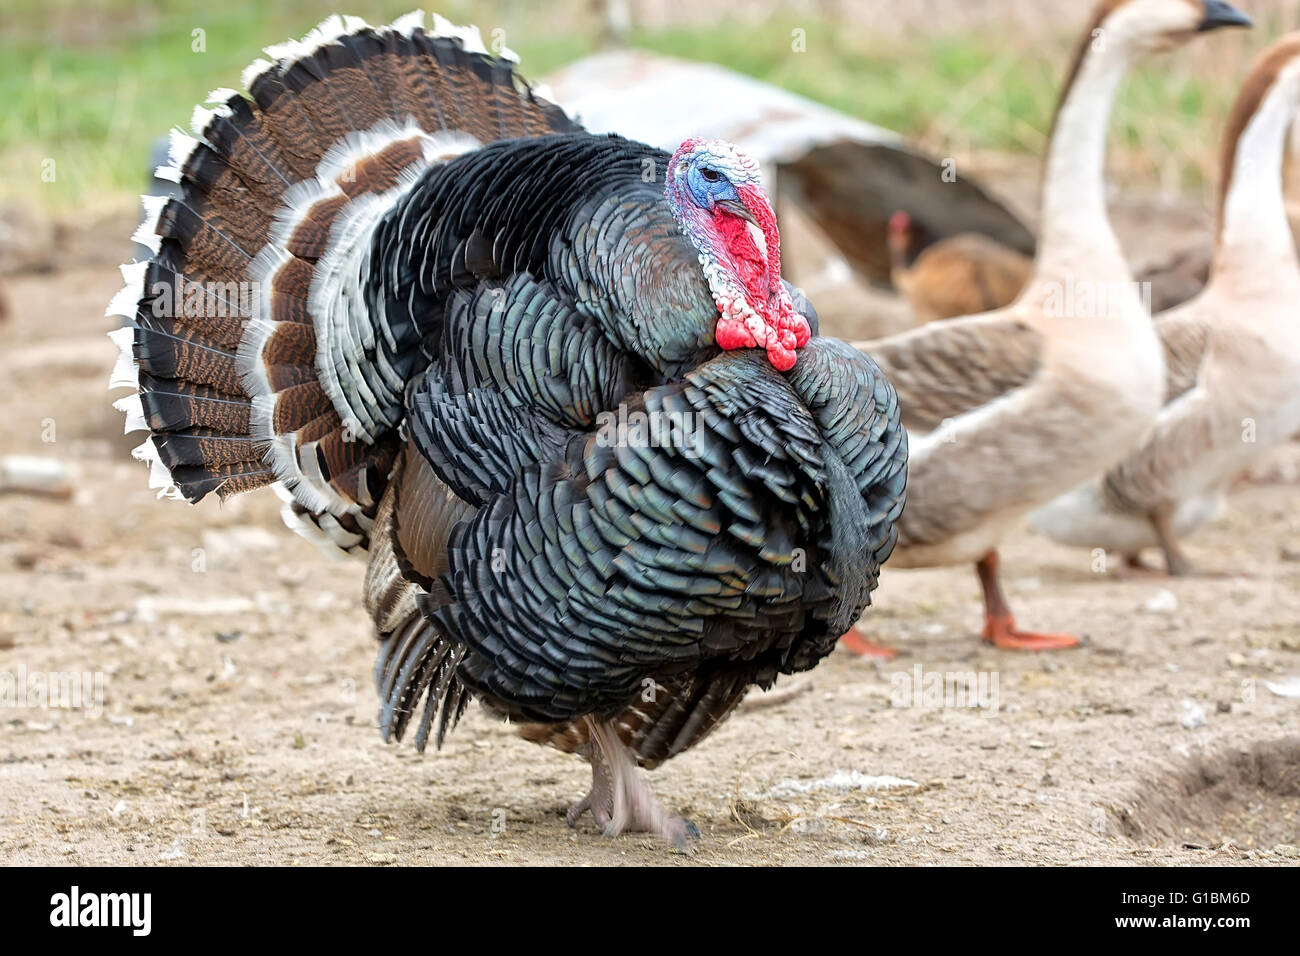 Turkey on the run on the farm Stock Photo